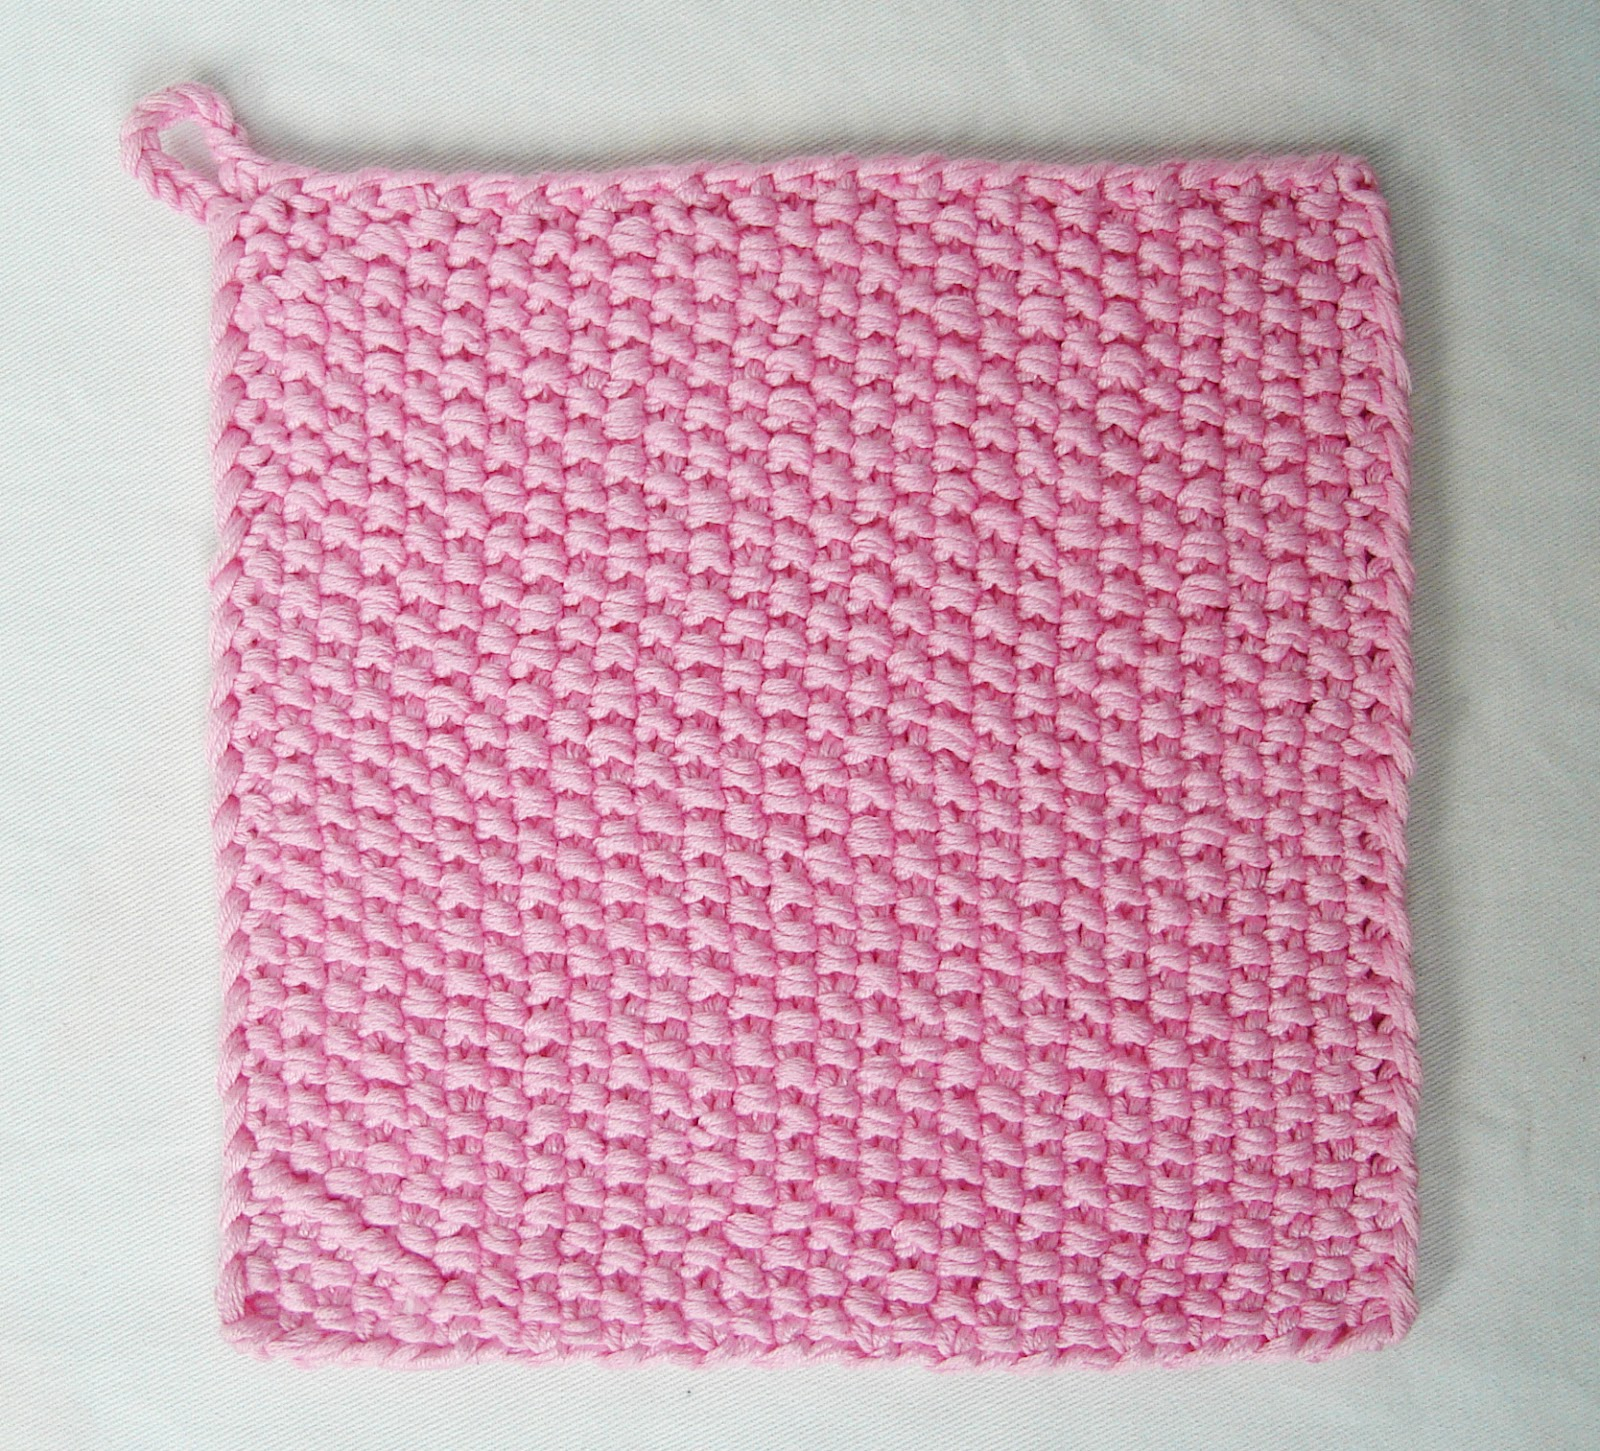 Knit Potholder Patterns Handmadehandsome Handmade Items And Knitting Patterns Handgemaakte